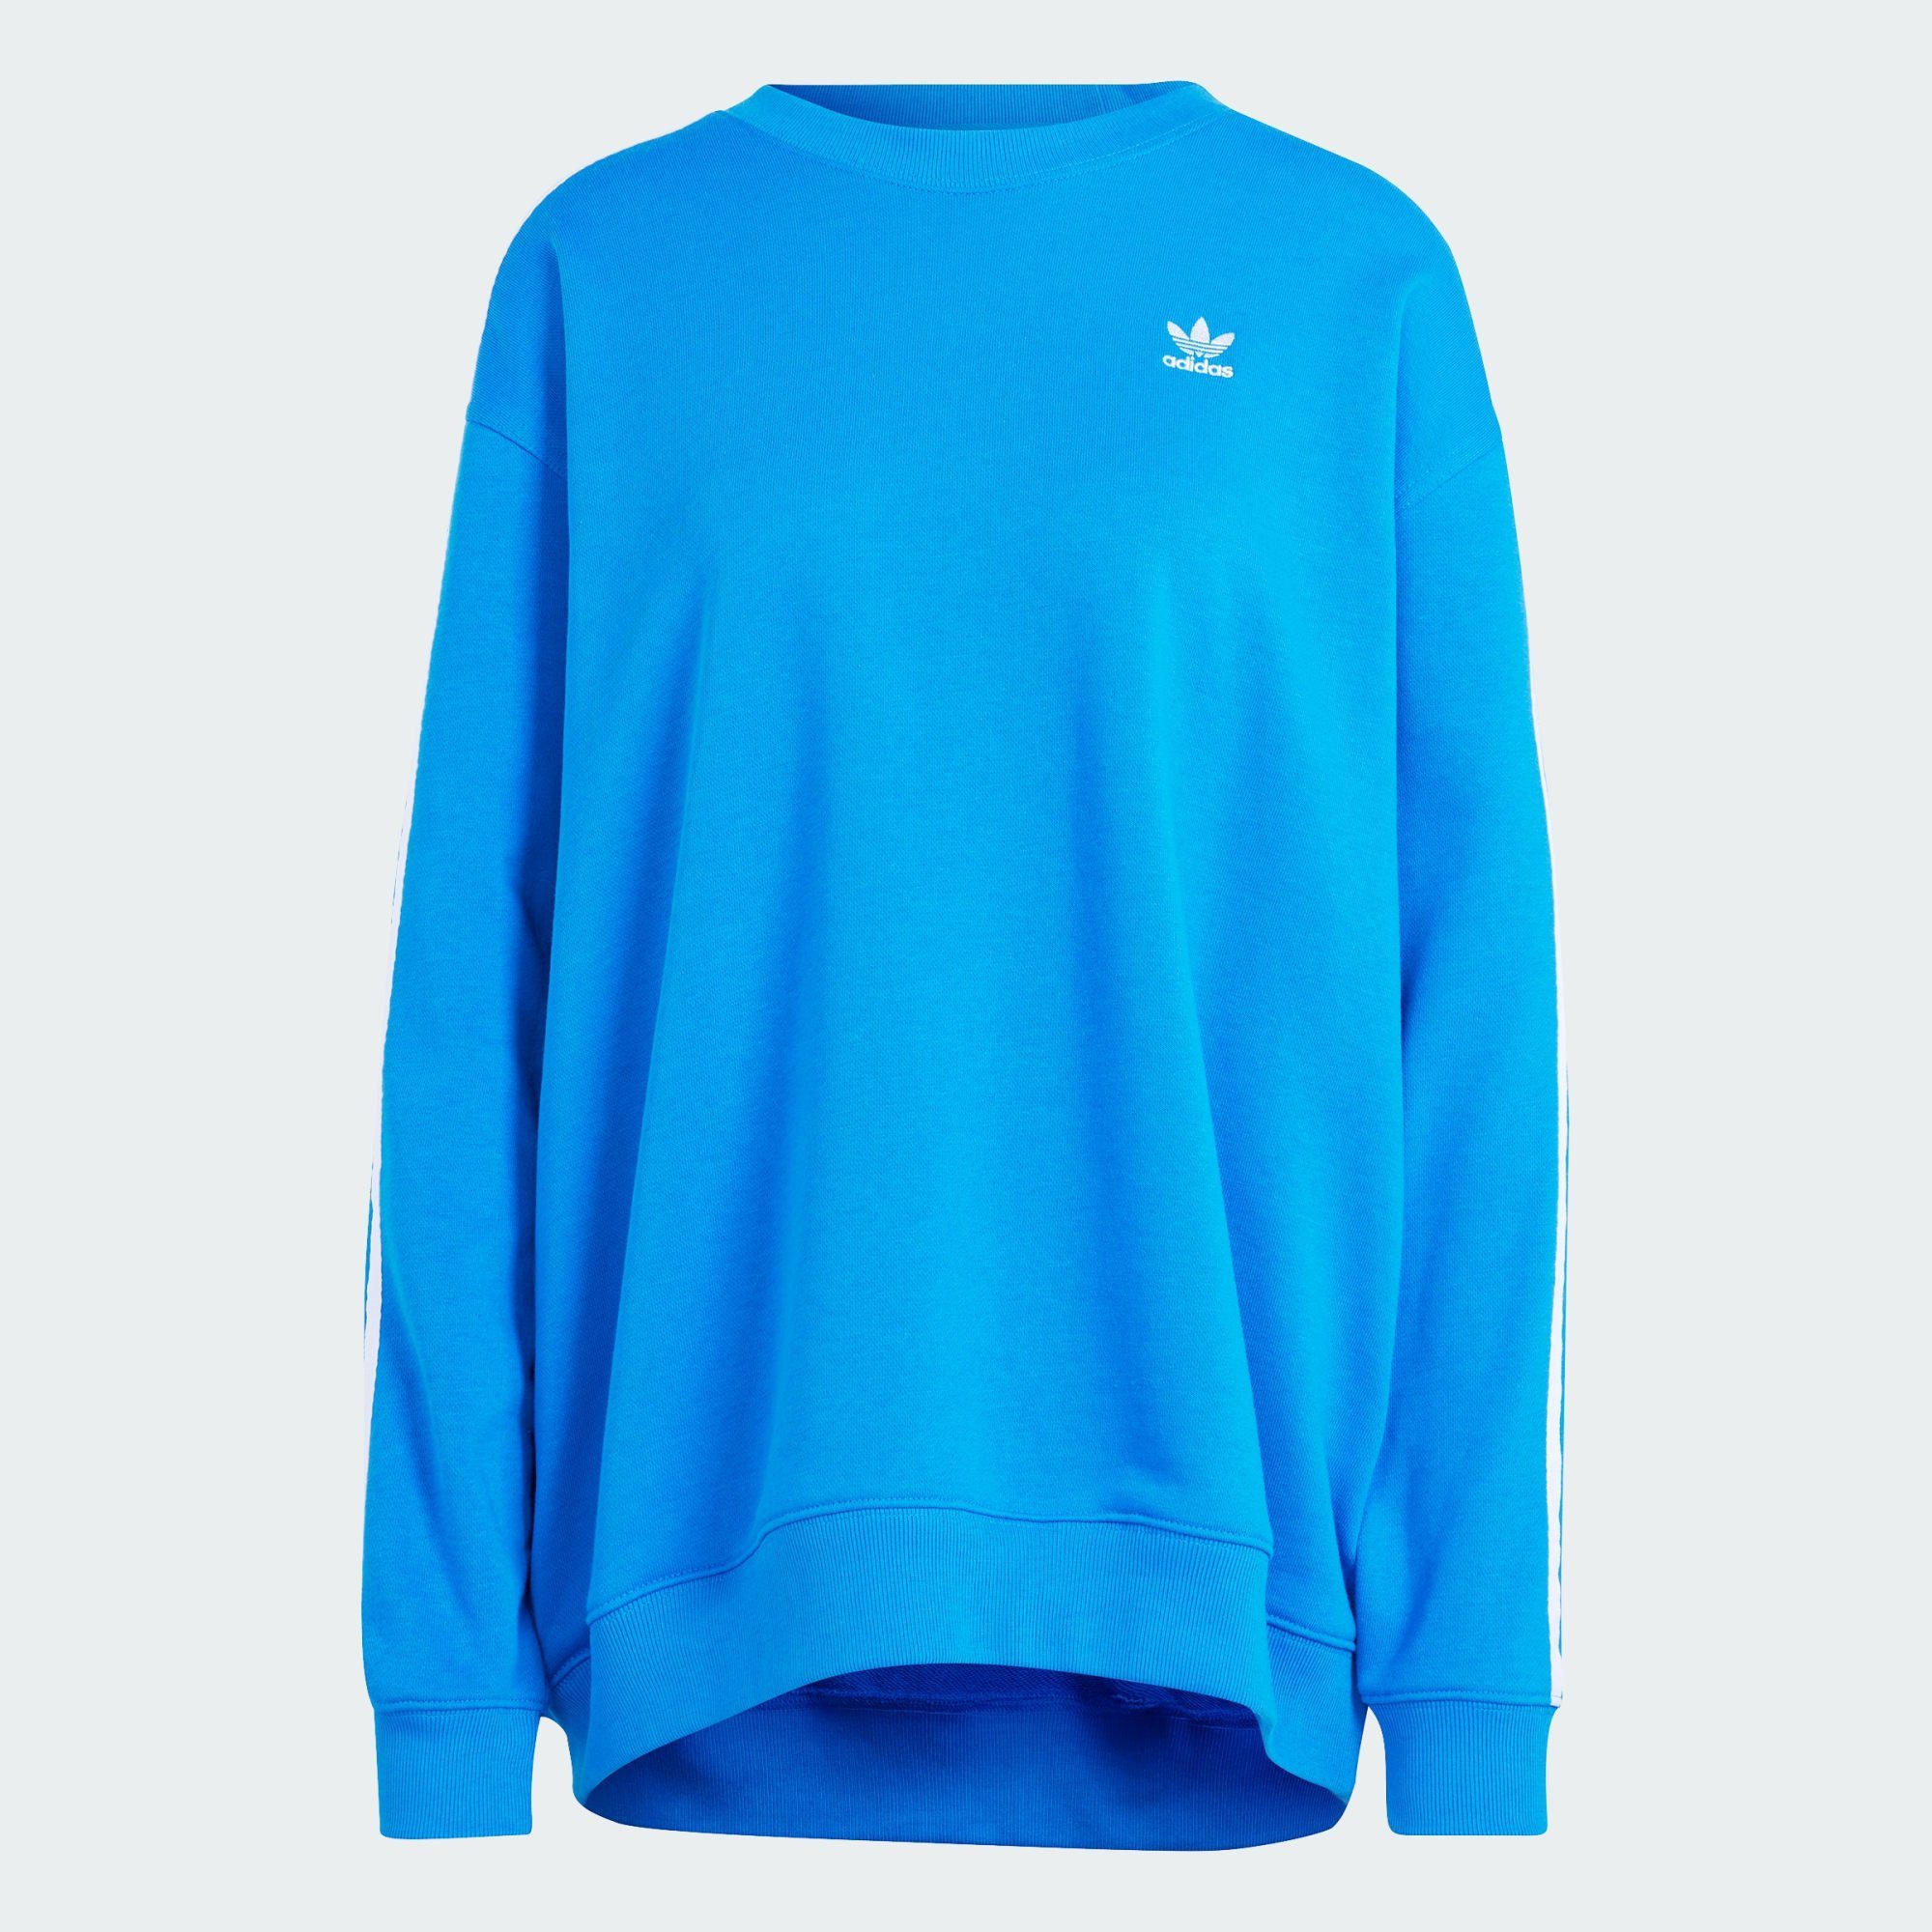 OVERSIZED SWEATSHIRT Blue 3-STREIFEN Bird Originals adidas Sweatshirt